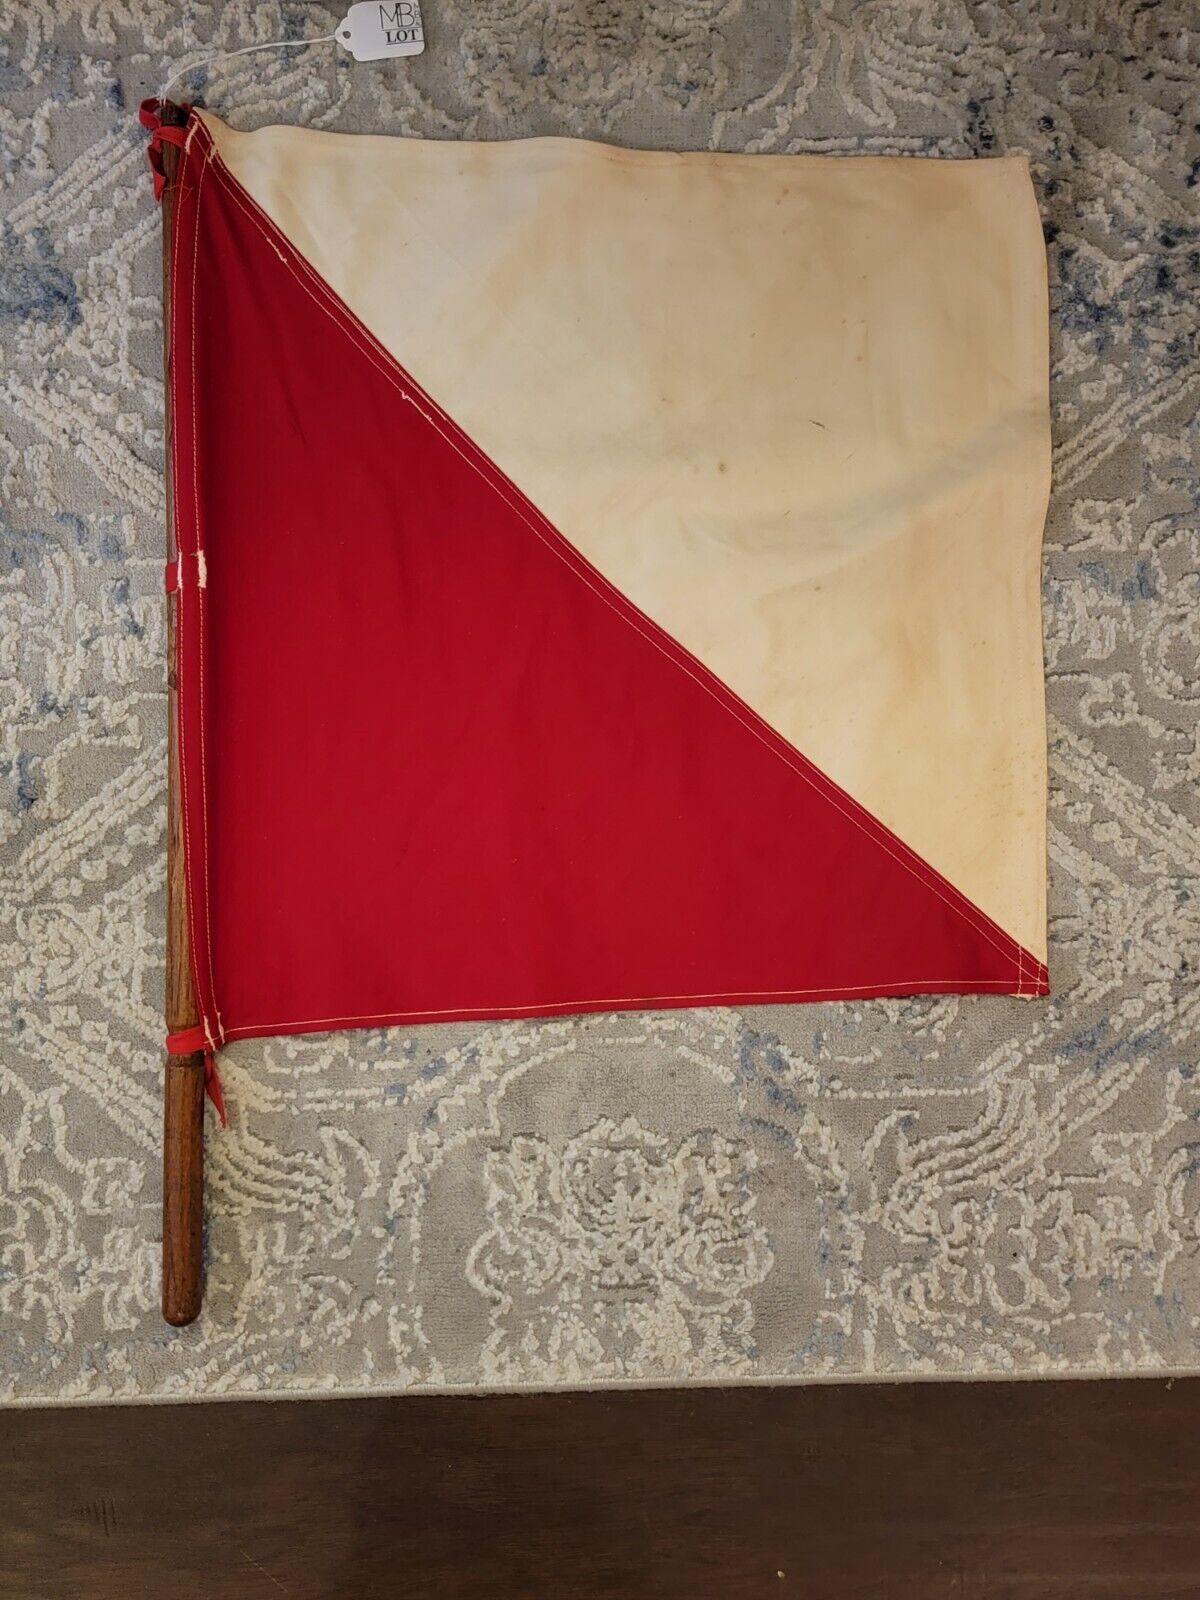 Rare Original WWI AEF US Army Signal Corps Semaphore Signal Flag. No Tears.